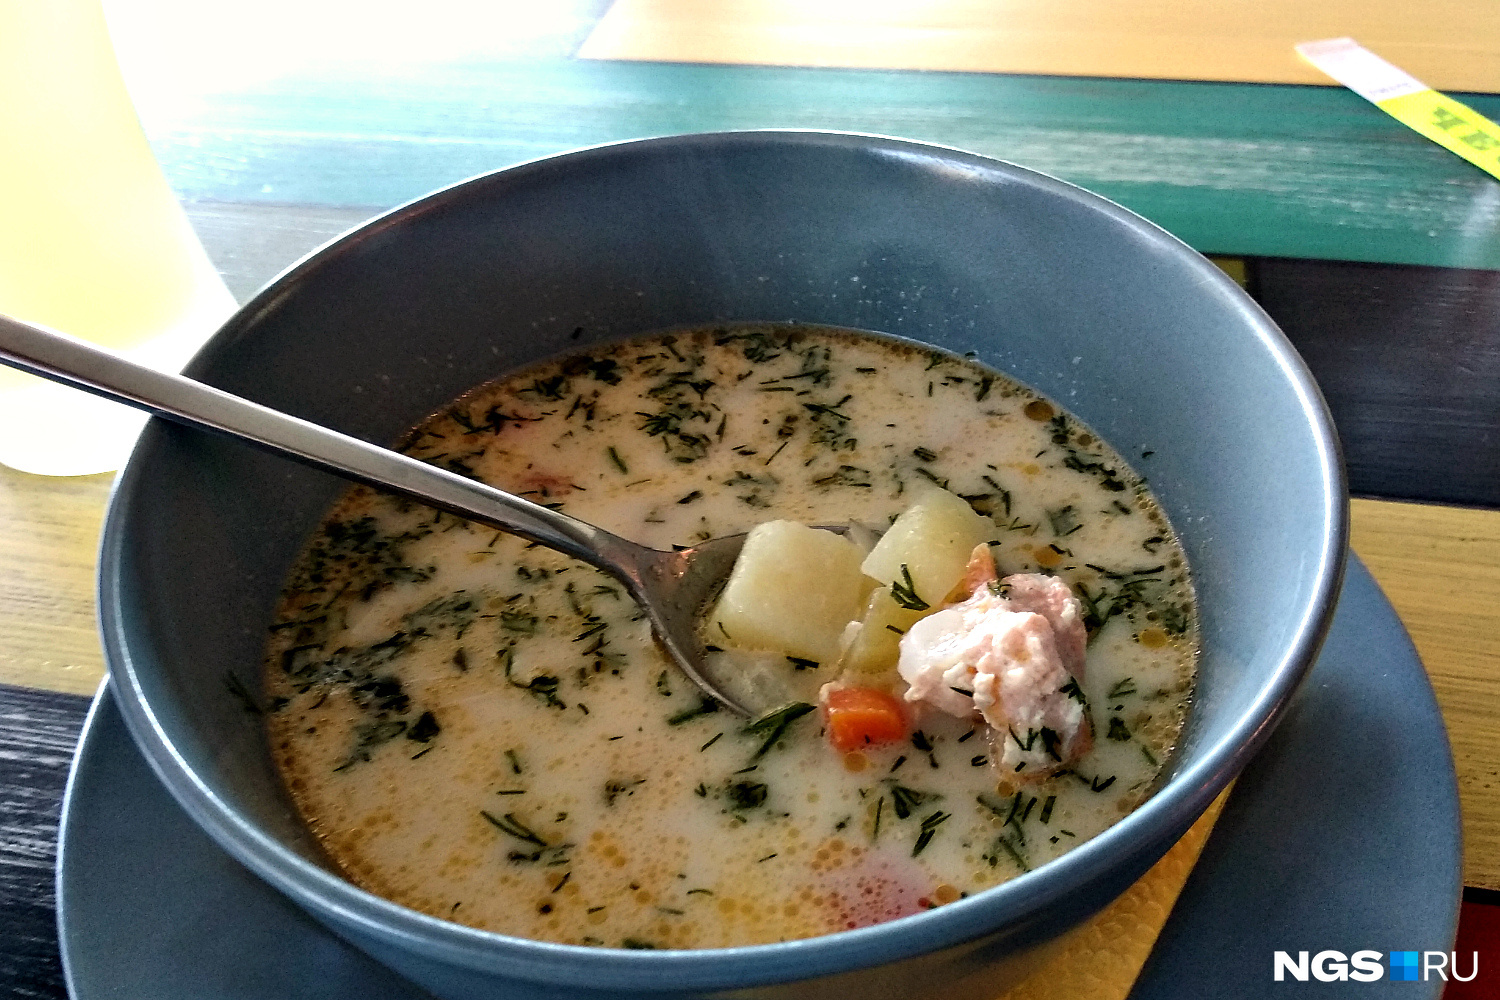 Суп рыбный по-скандинавски (115 рублей 22 копейки)